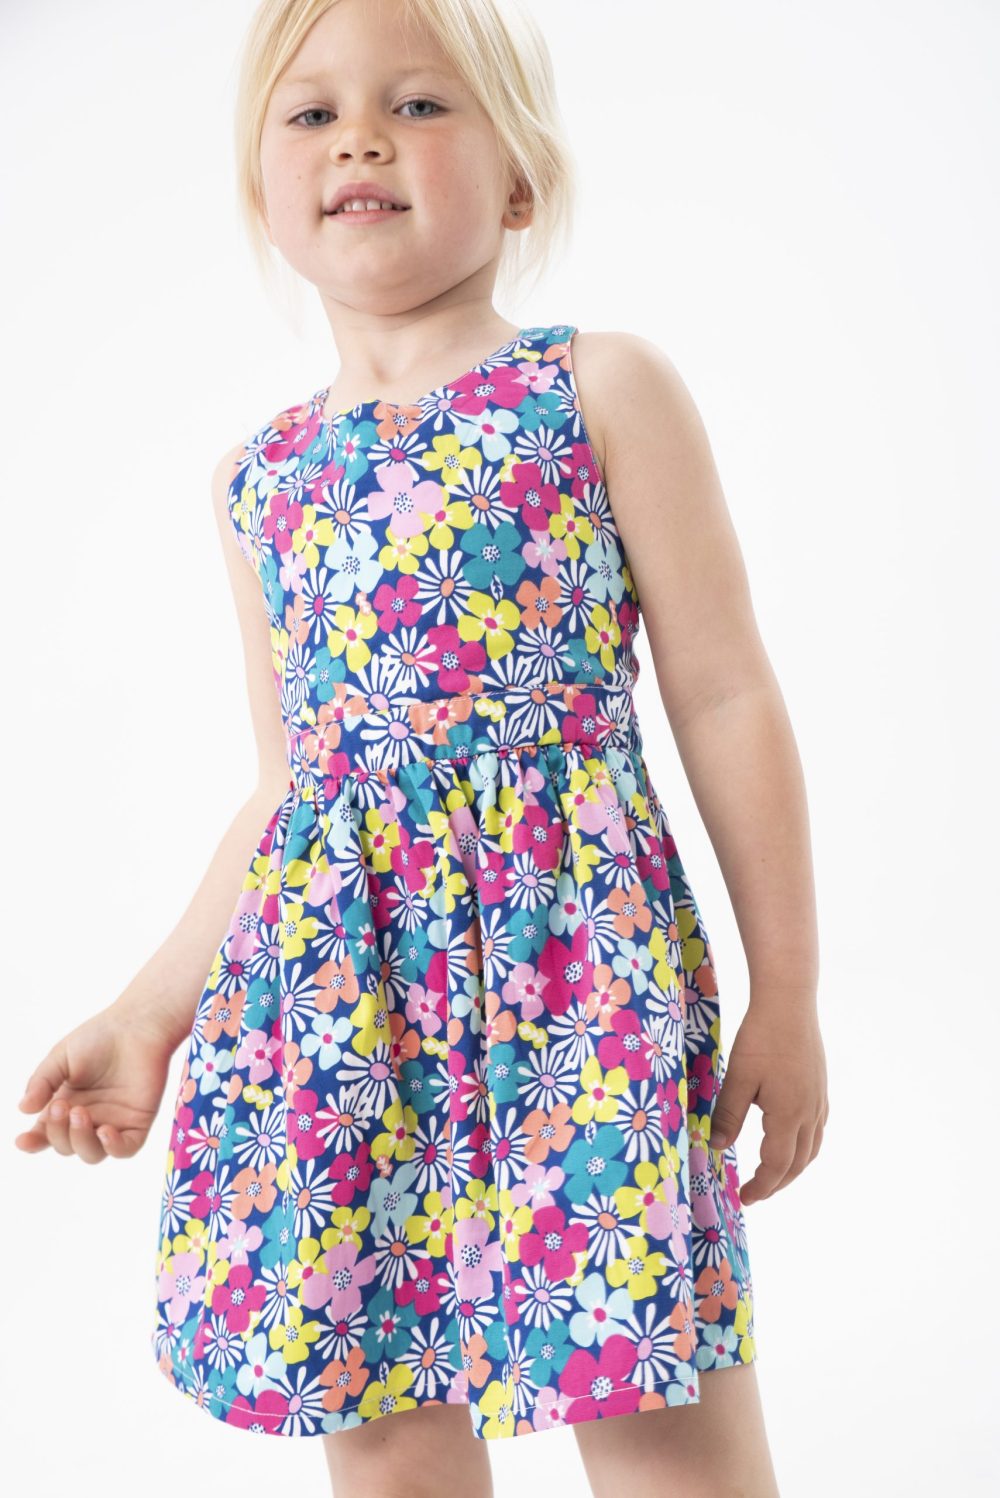 Φόρεμα βρεφικό floral με χιαστί πλάτη/Boboli